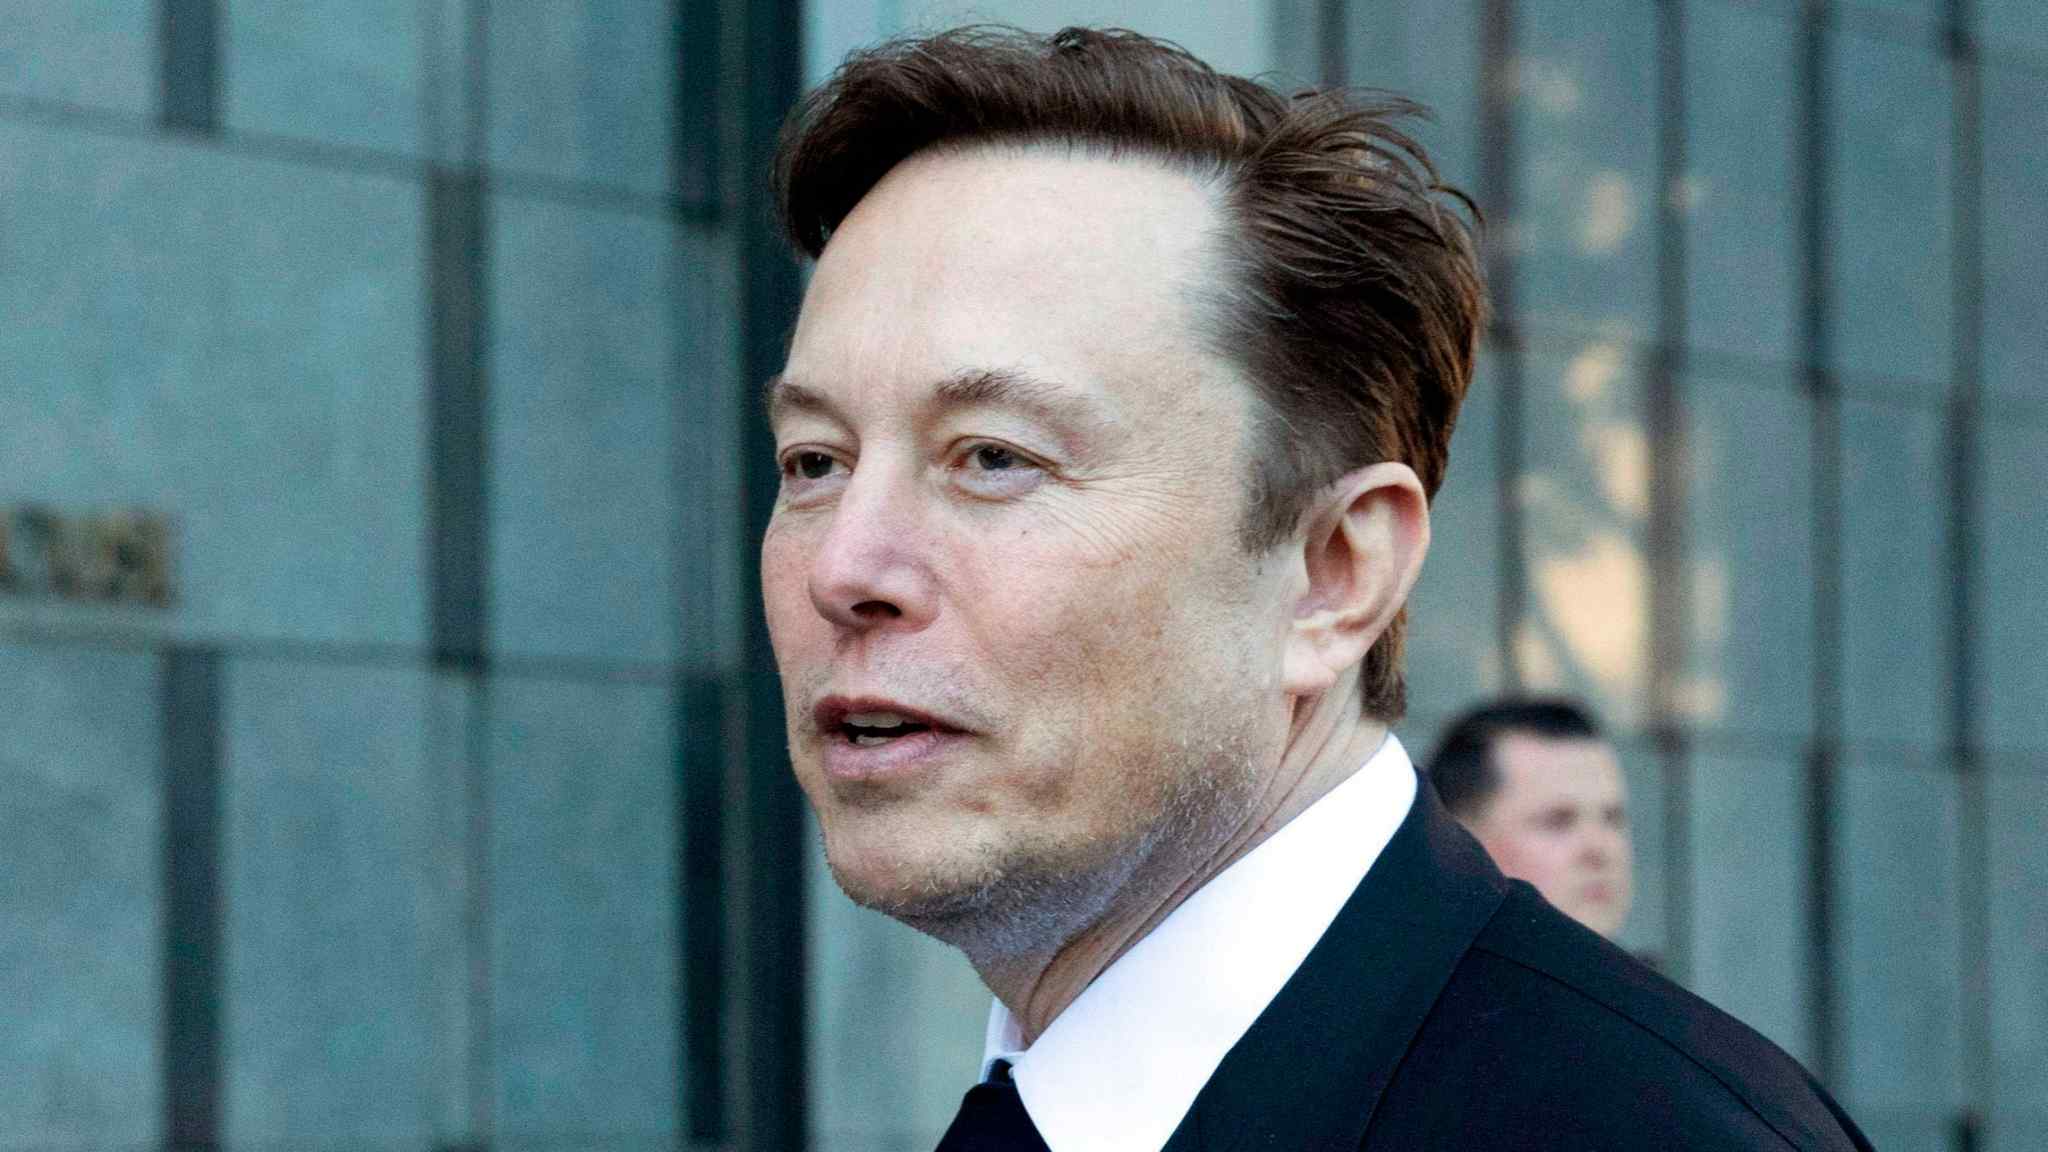 Jury in trial over Musk’s Tesla ‘funding secured’ tweet begins deliberating